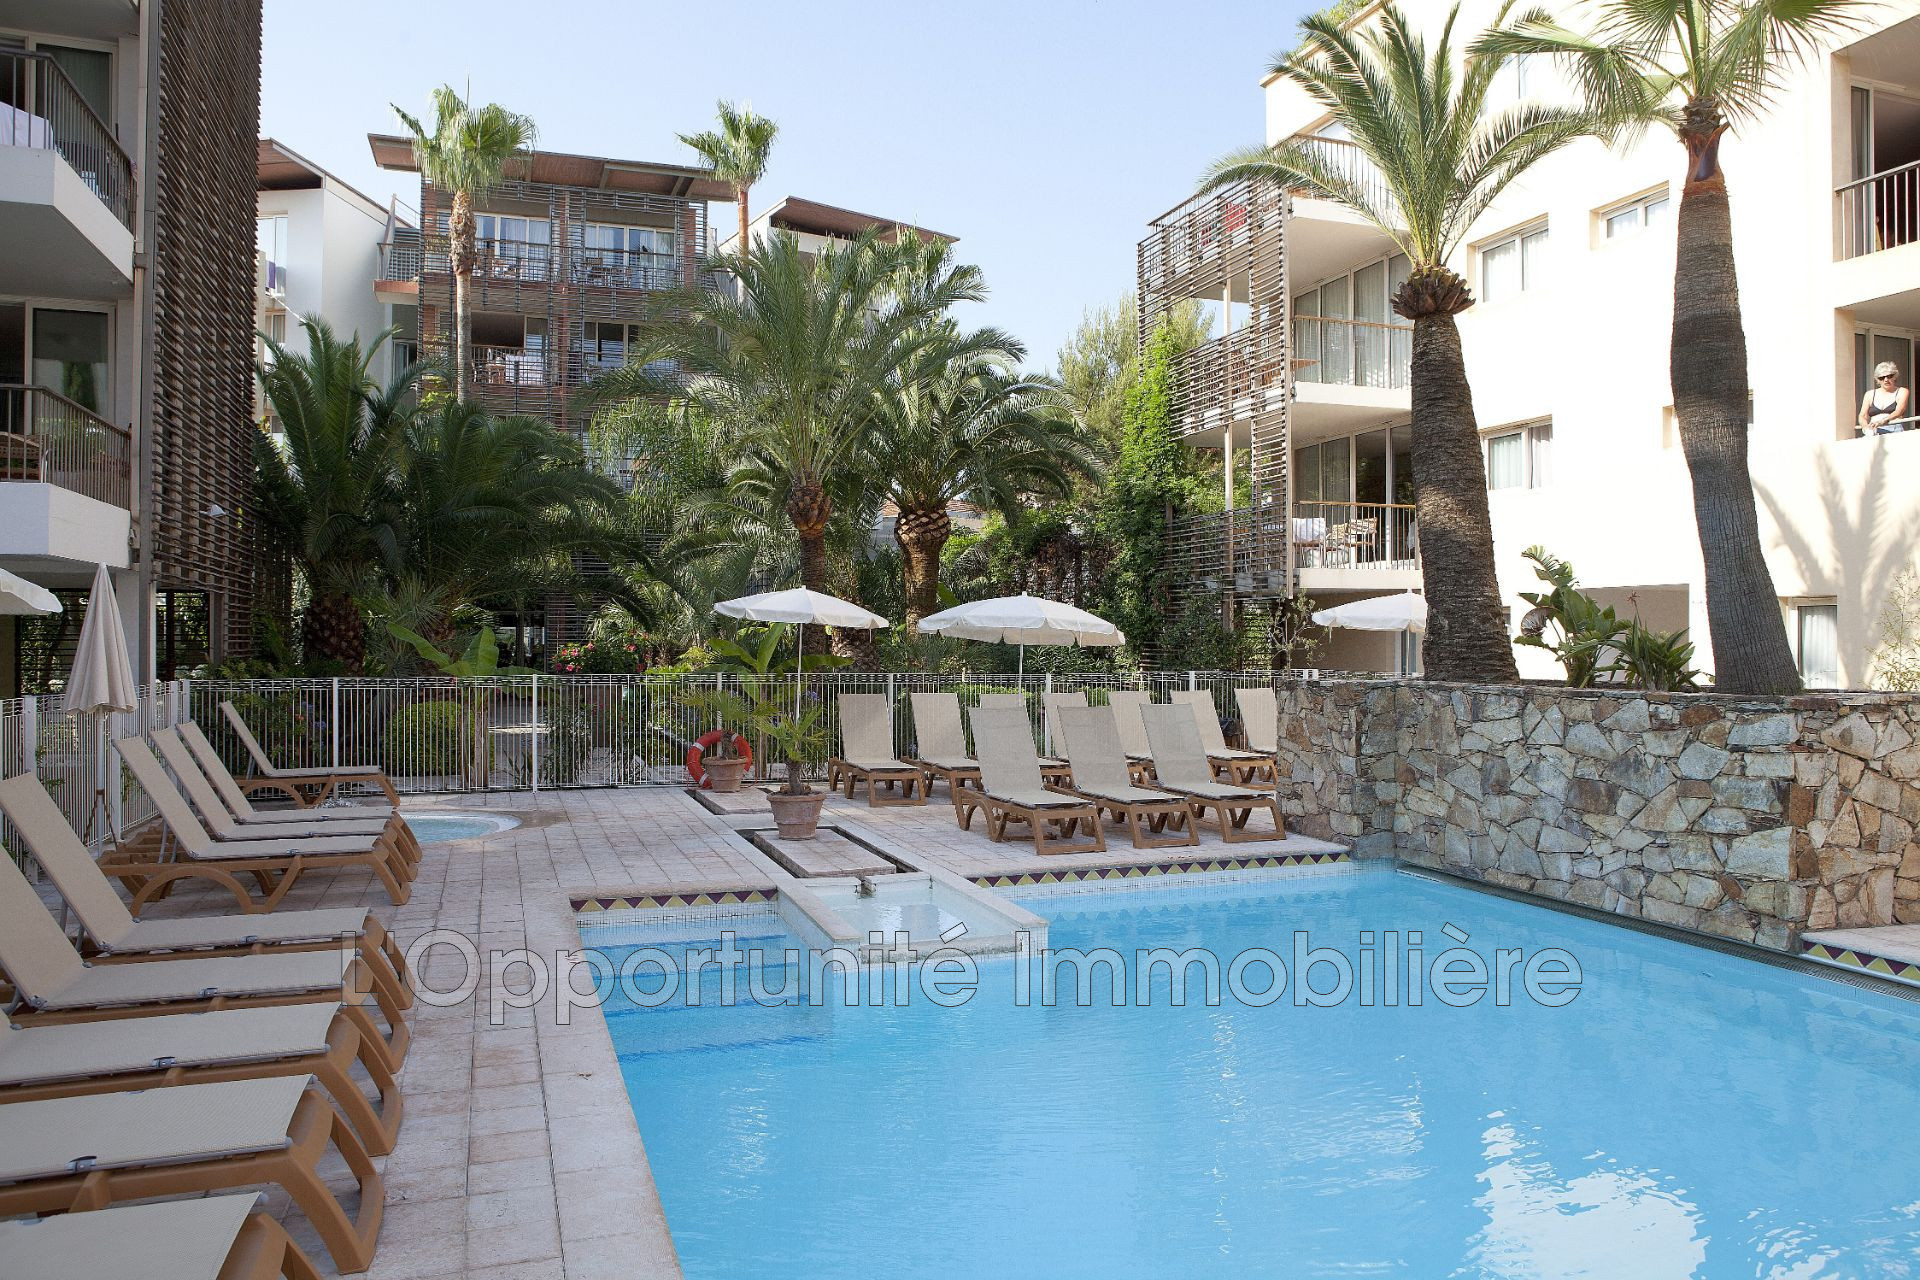 Vente Appartement 33m² 2 Pièces à Antibes (06160) - L'Opportunite Immobiliere